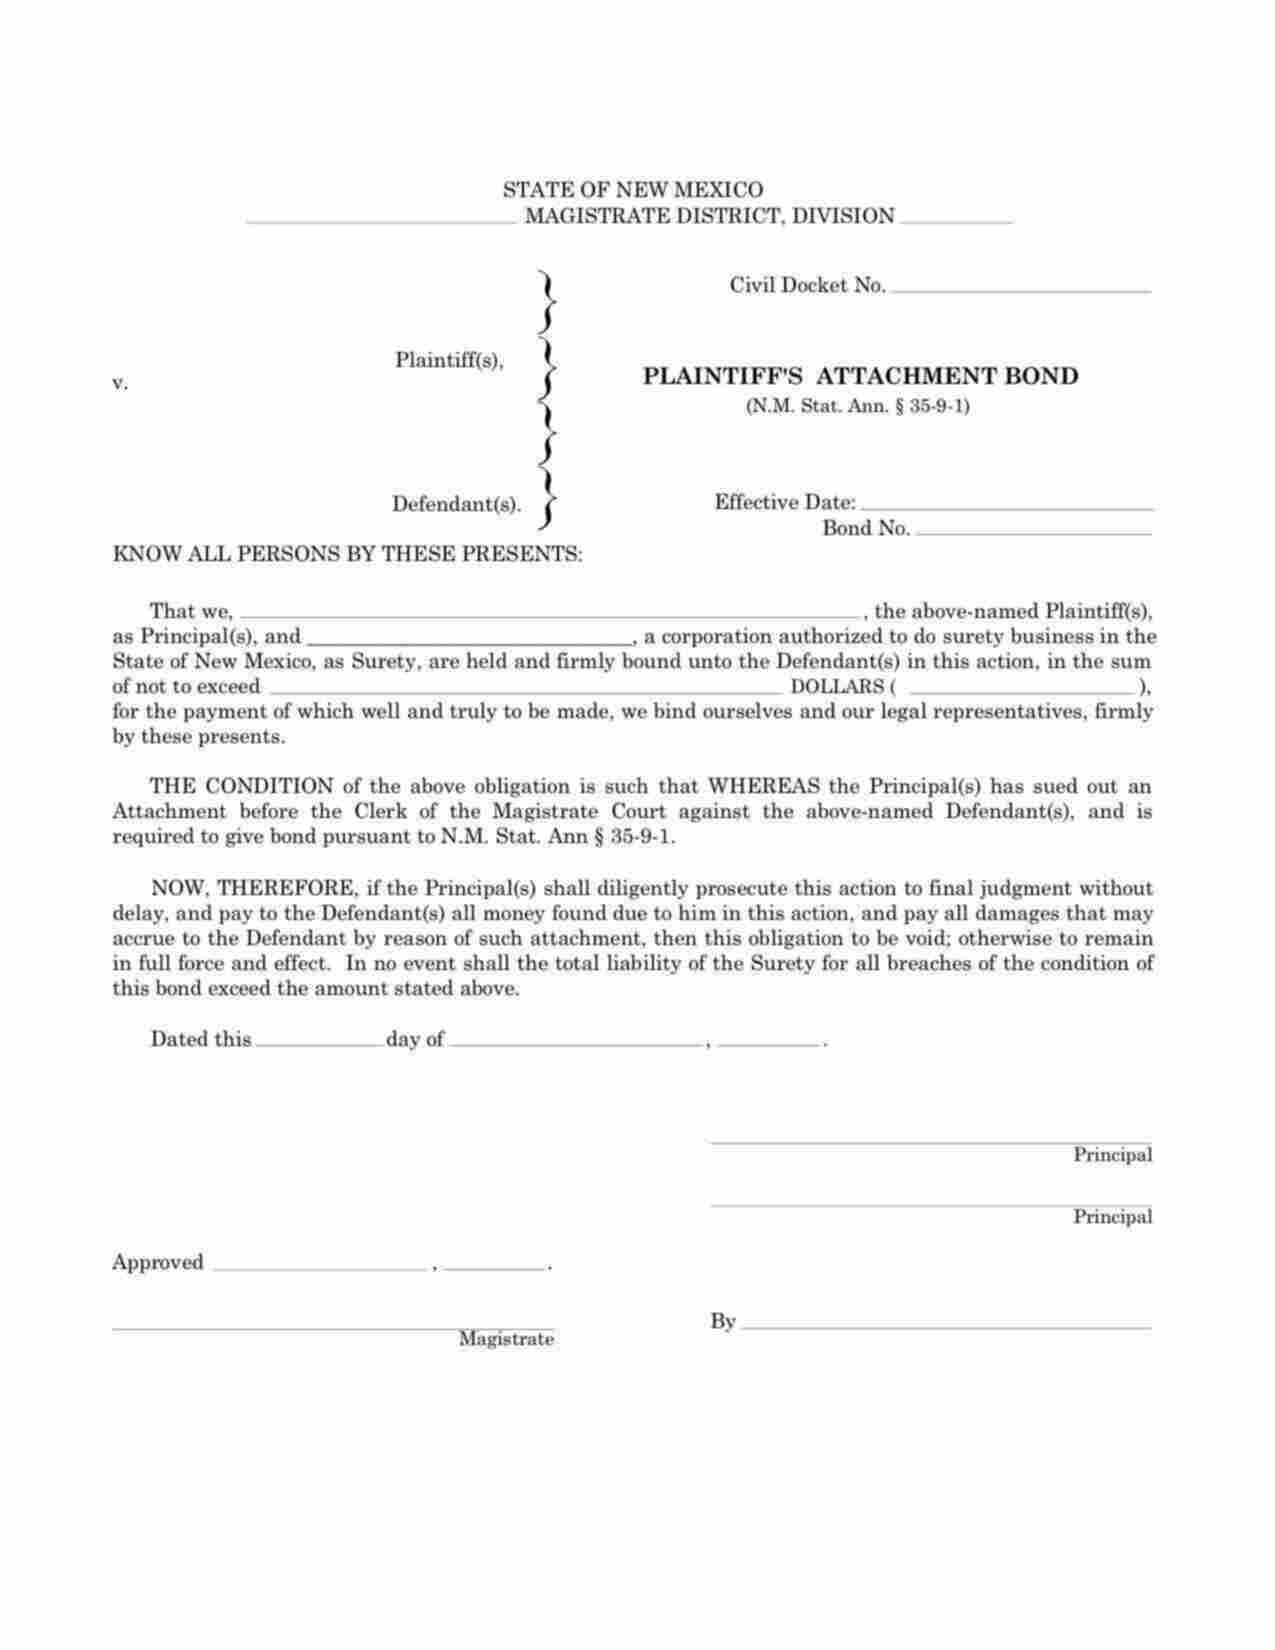 New Mexico Plaintiffs Attachment (Magistrate District Court) Bond Form